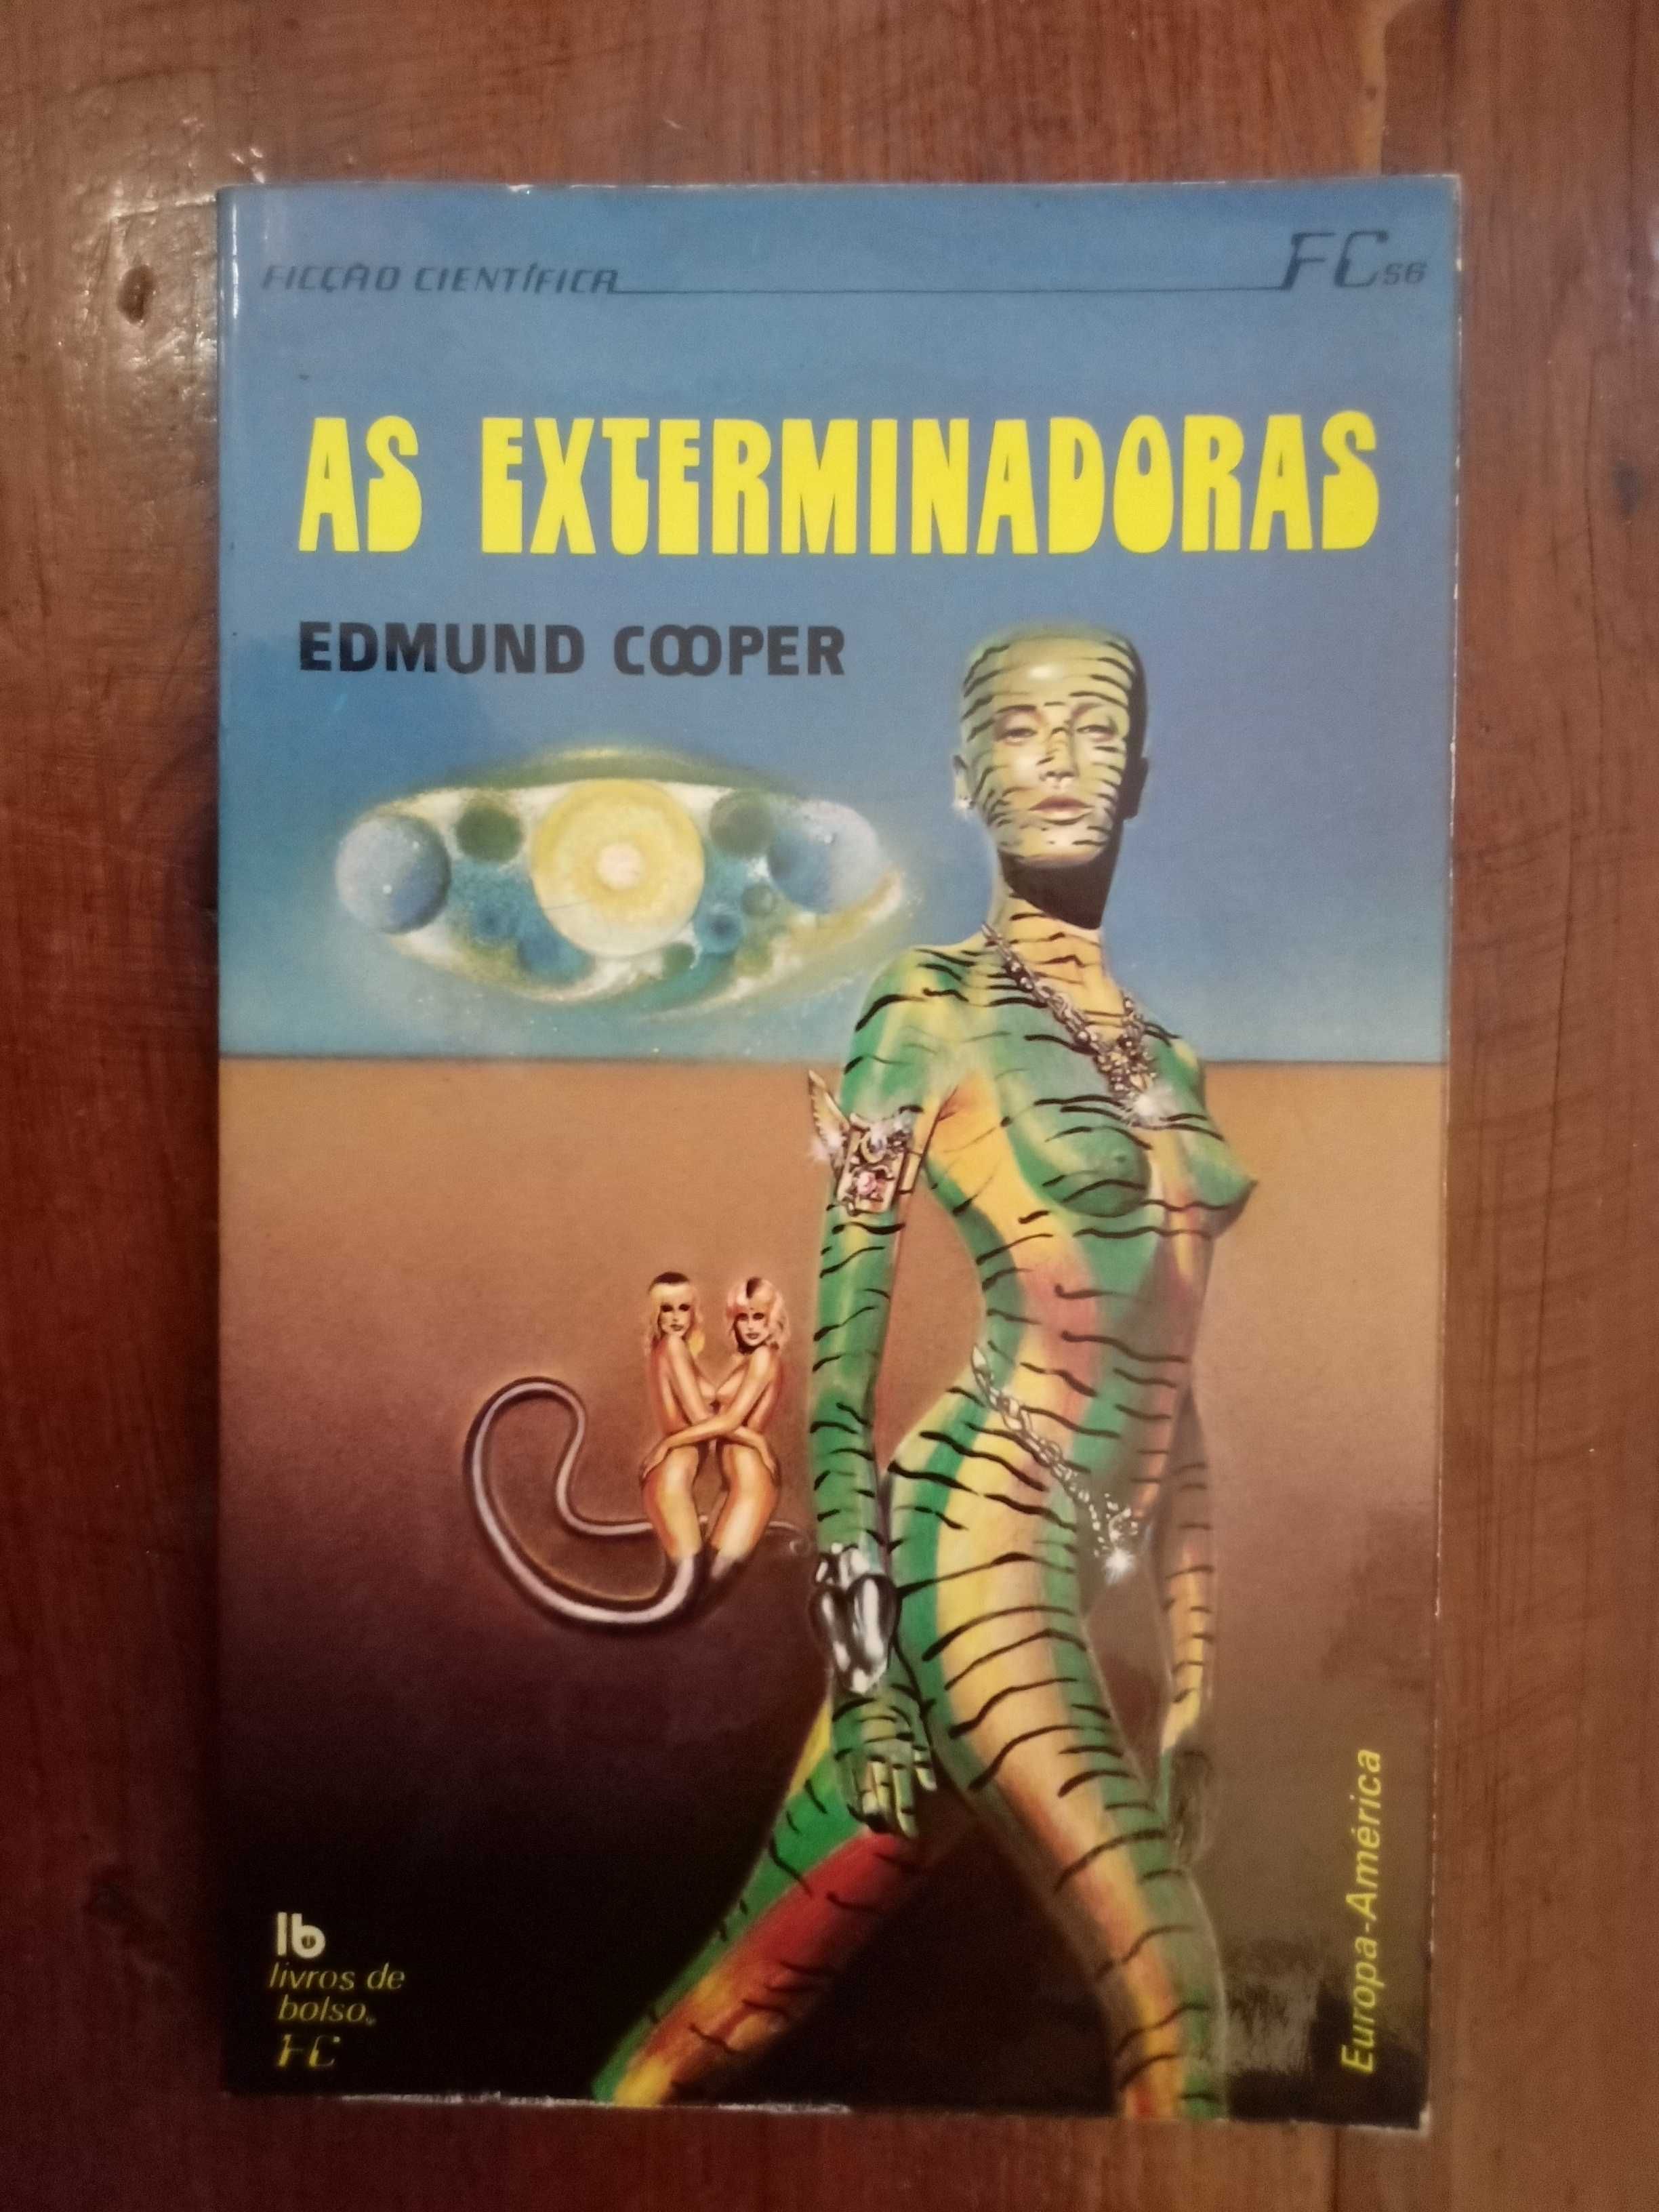 Edmund Cooper - As exterminadoras